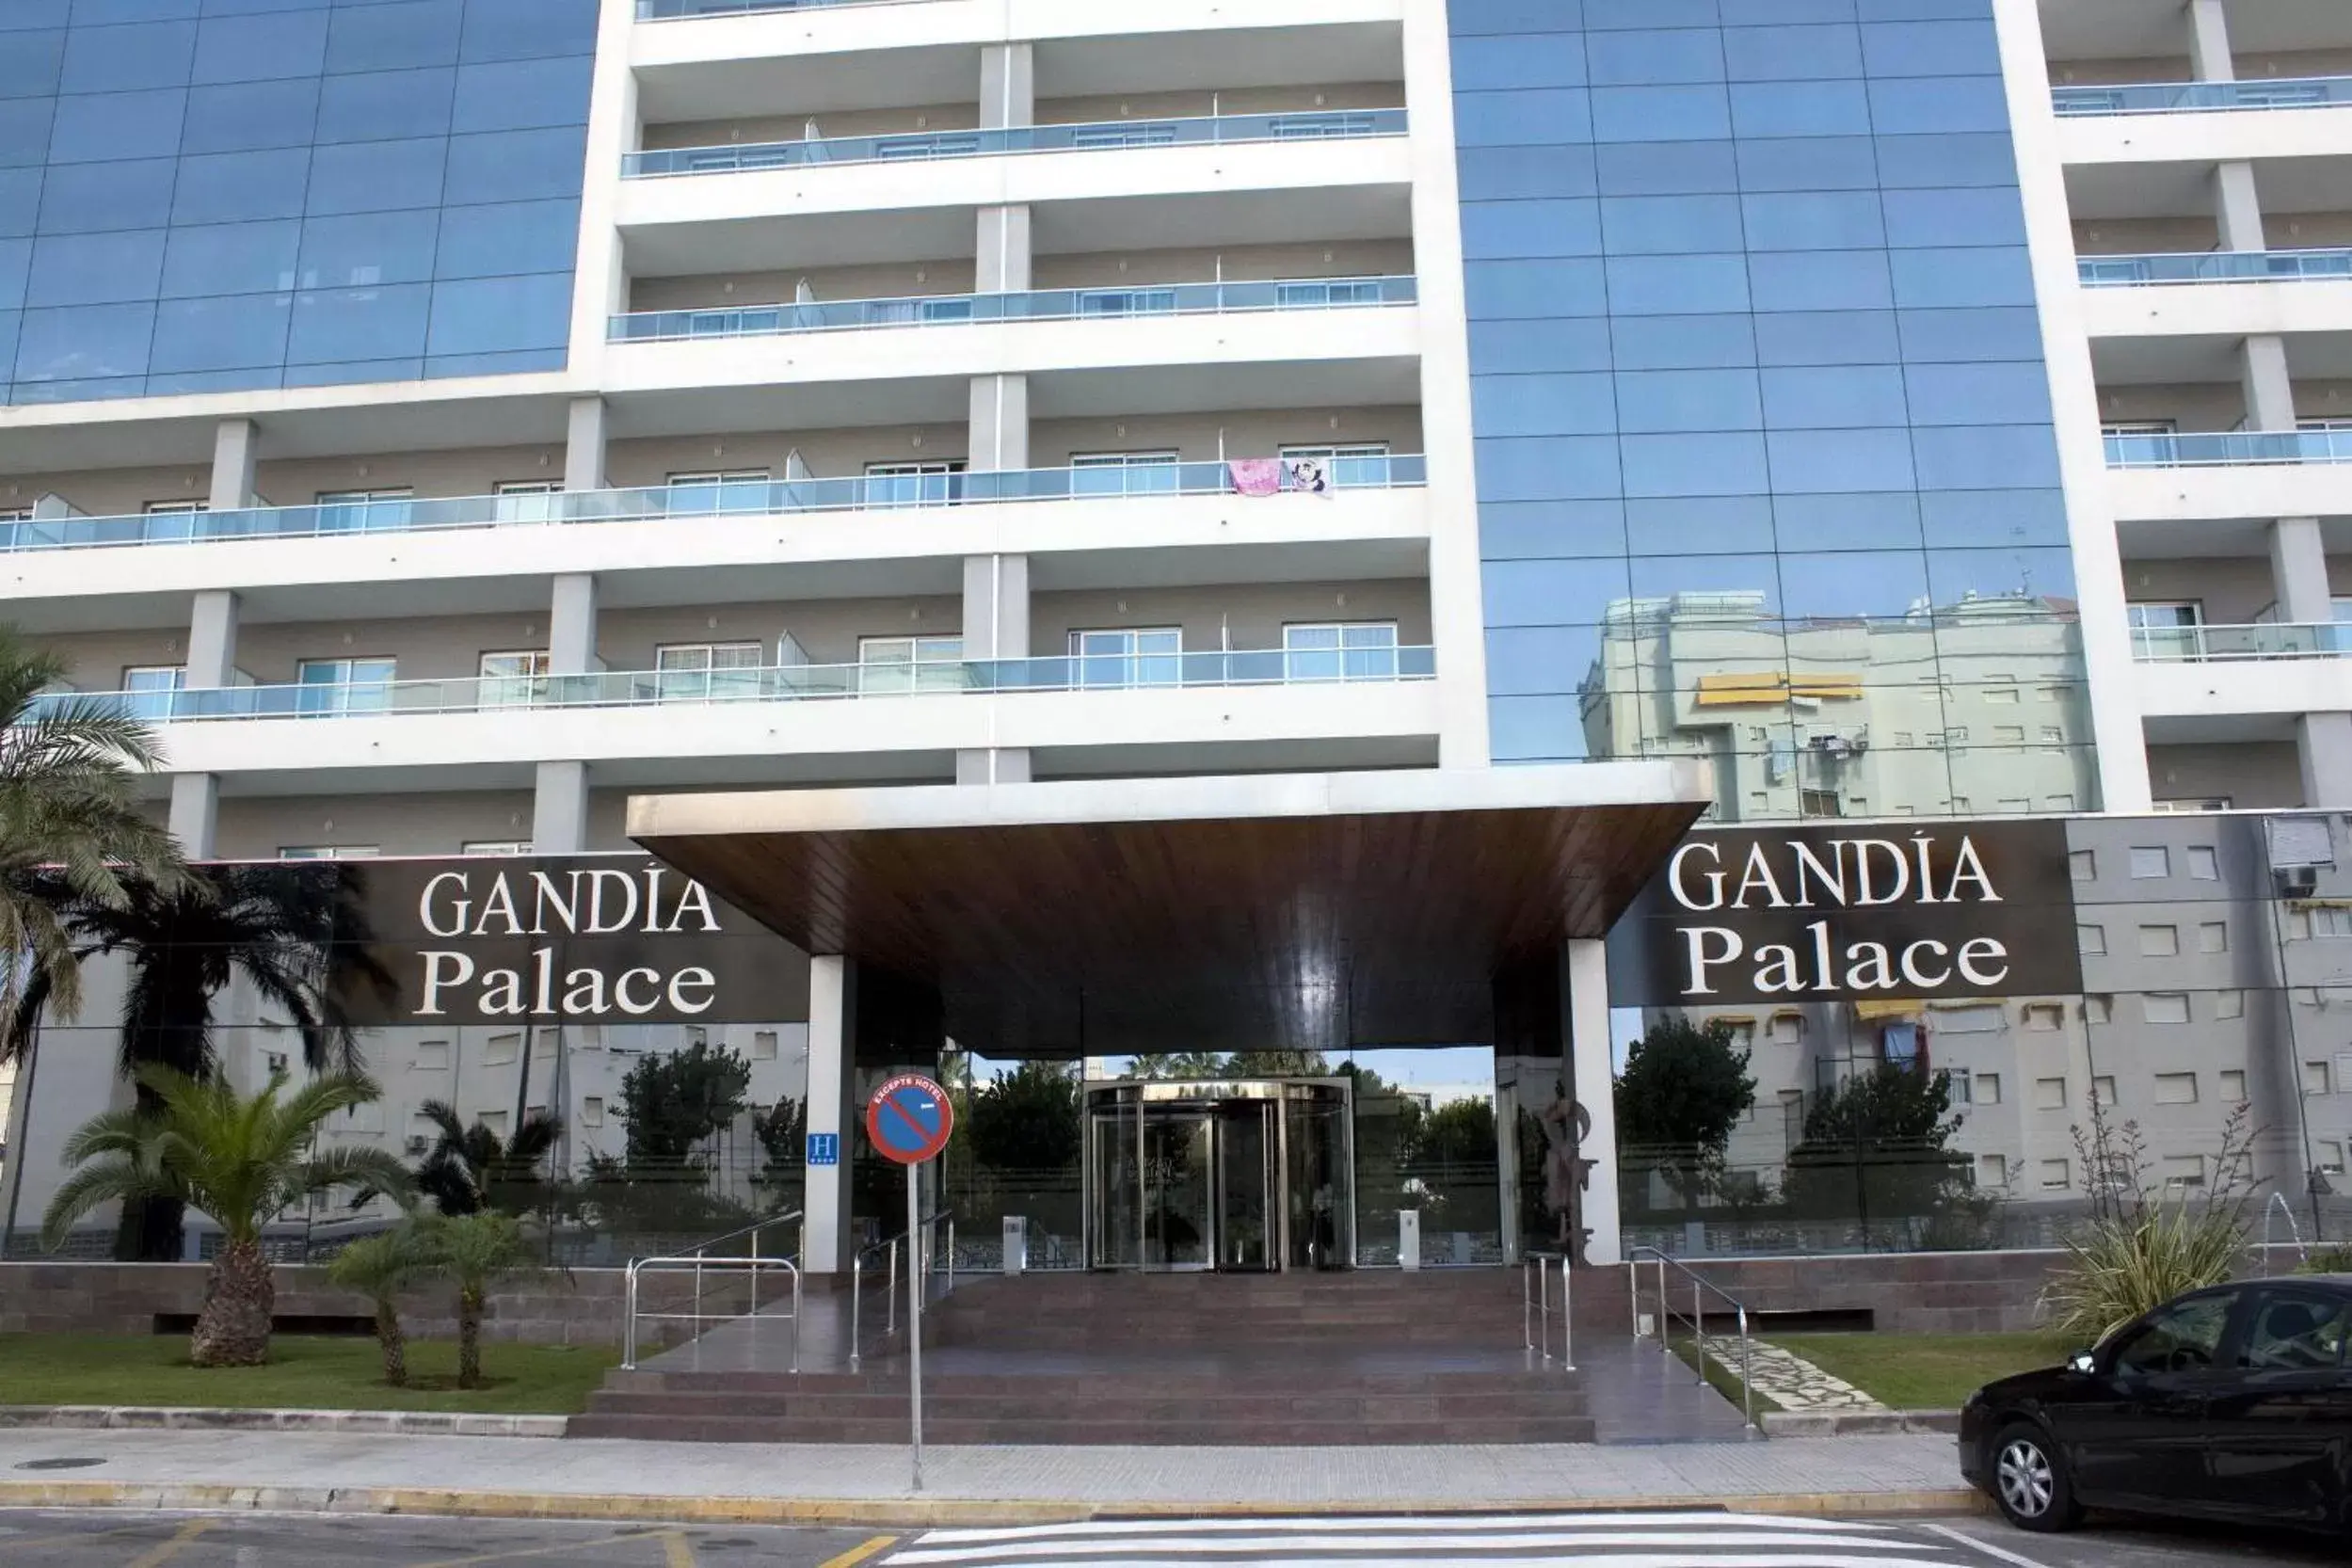 Facade/entrance, Property Building in VS Gandía Palace Hotel ****